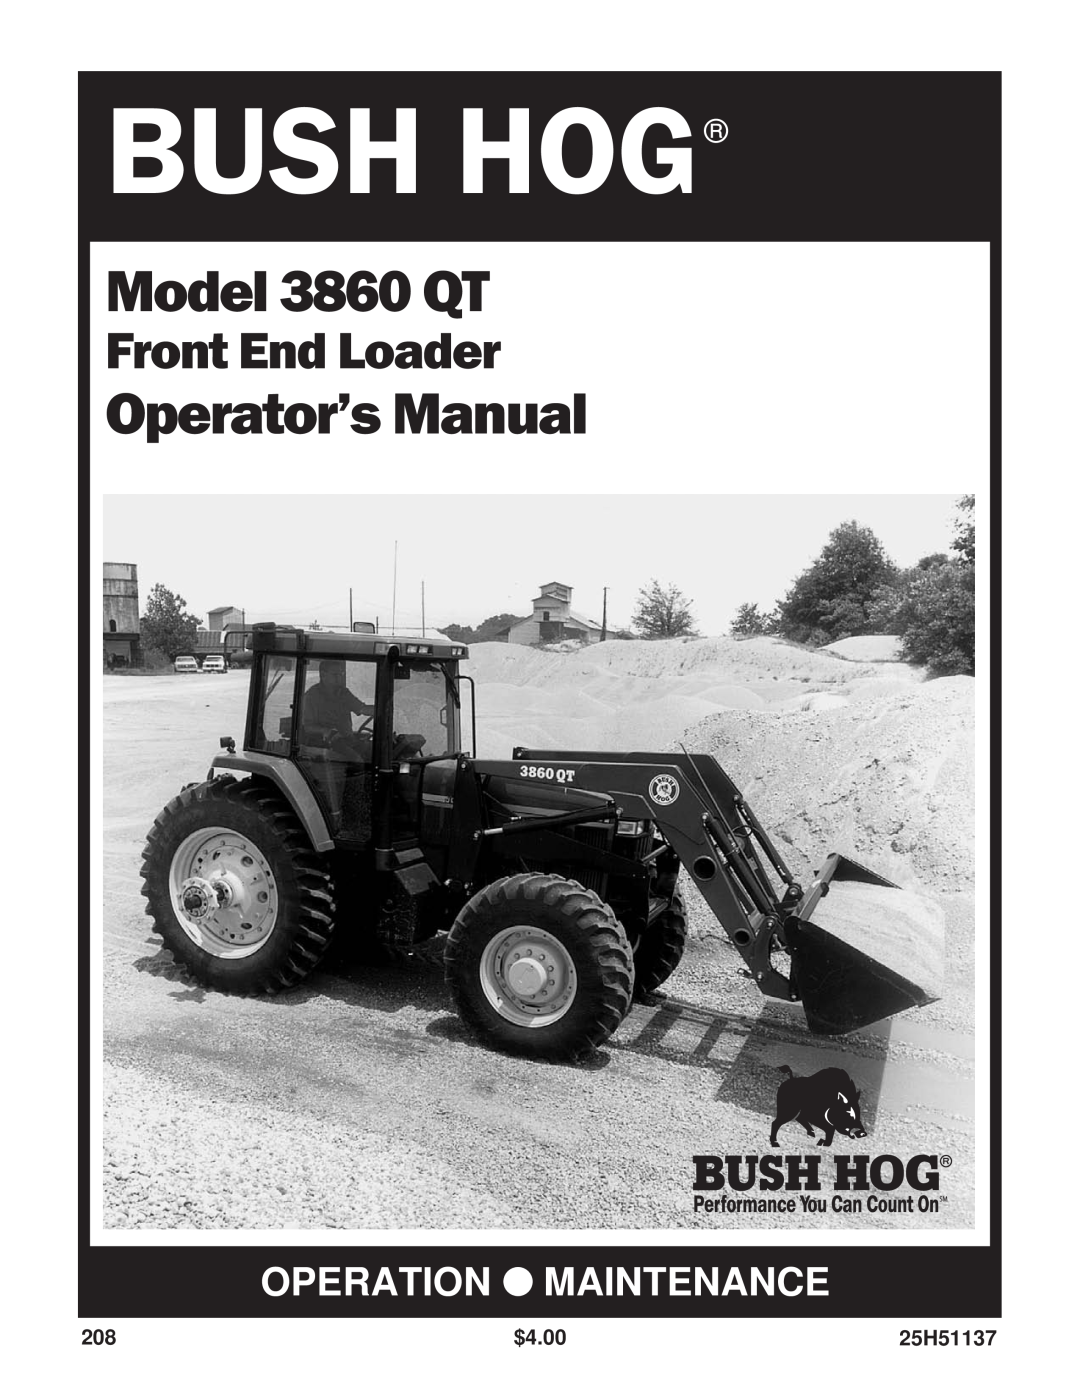 Bush Hog manual Front End Loader, Bush Hog, Model 3860 QT, Operator’s Manual, Operation Maintenance, 25H51137 